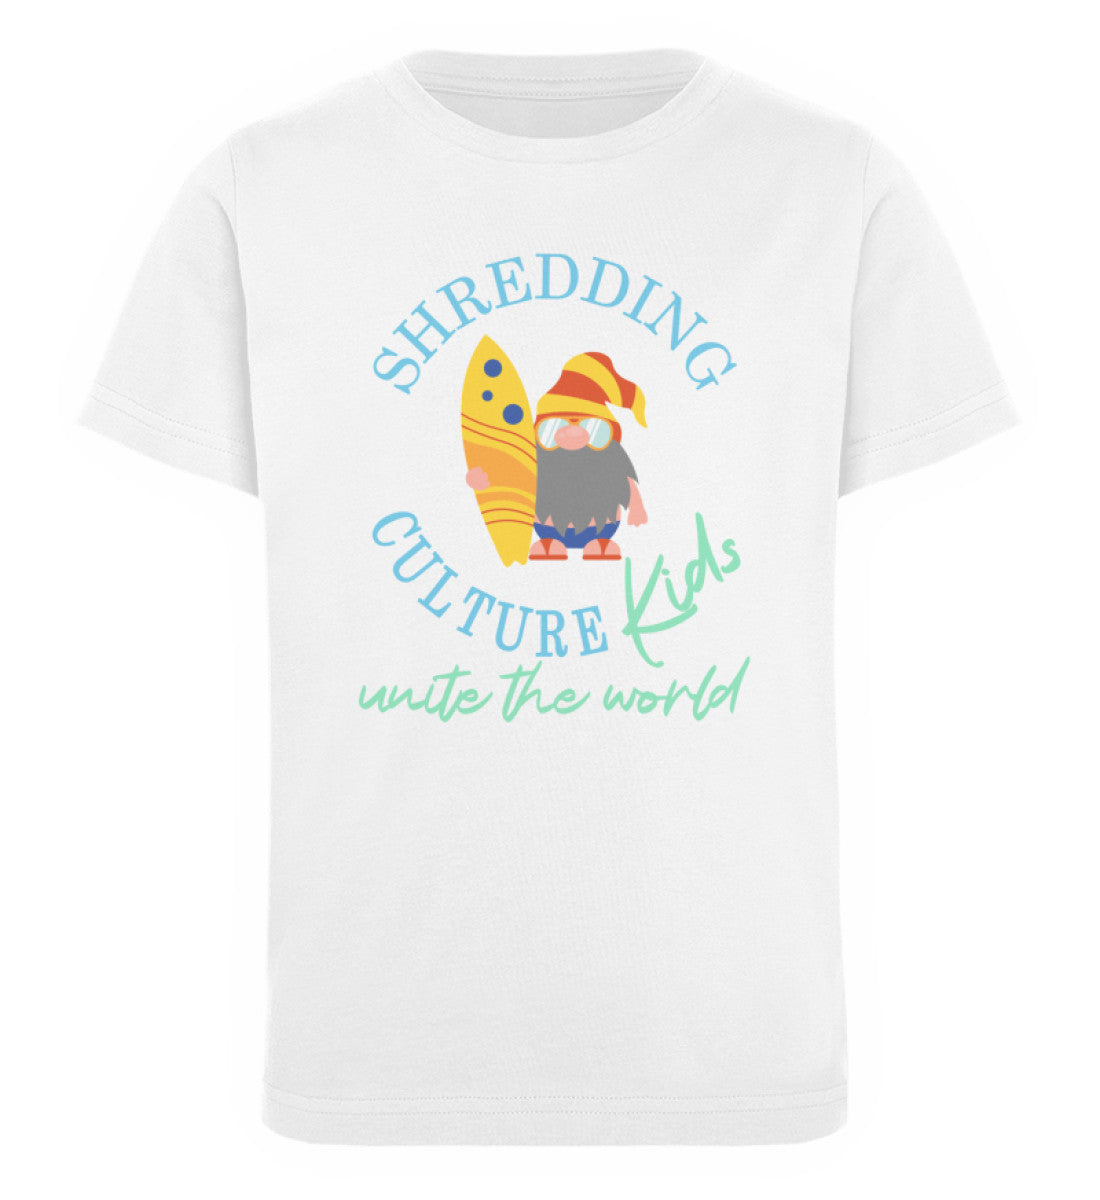 Weißes Kinder T-Shirt für Mädchen und Jungen bedruckt mit dem Design der Roger Rockawoo Kollektion shredding culture kids surfing